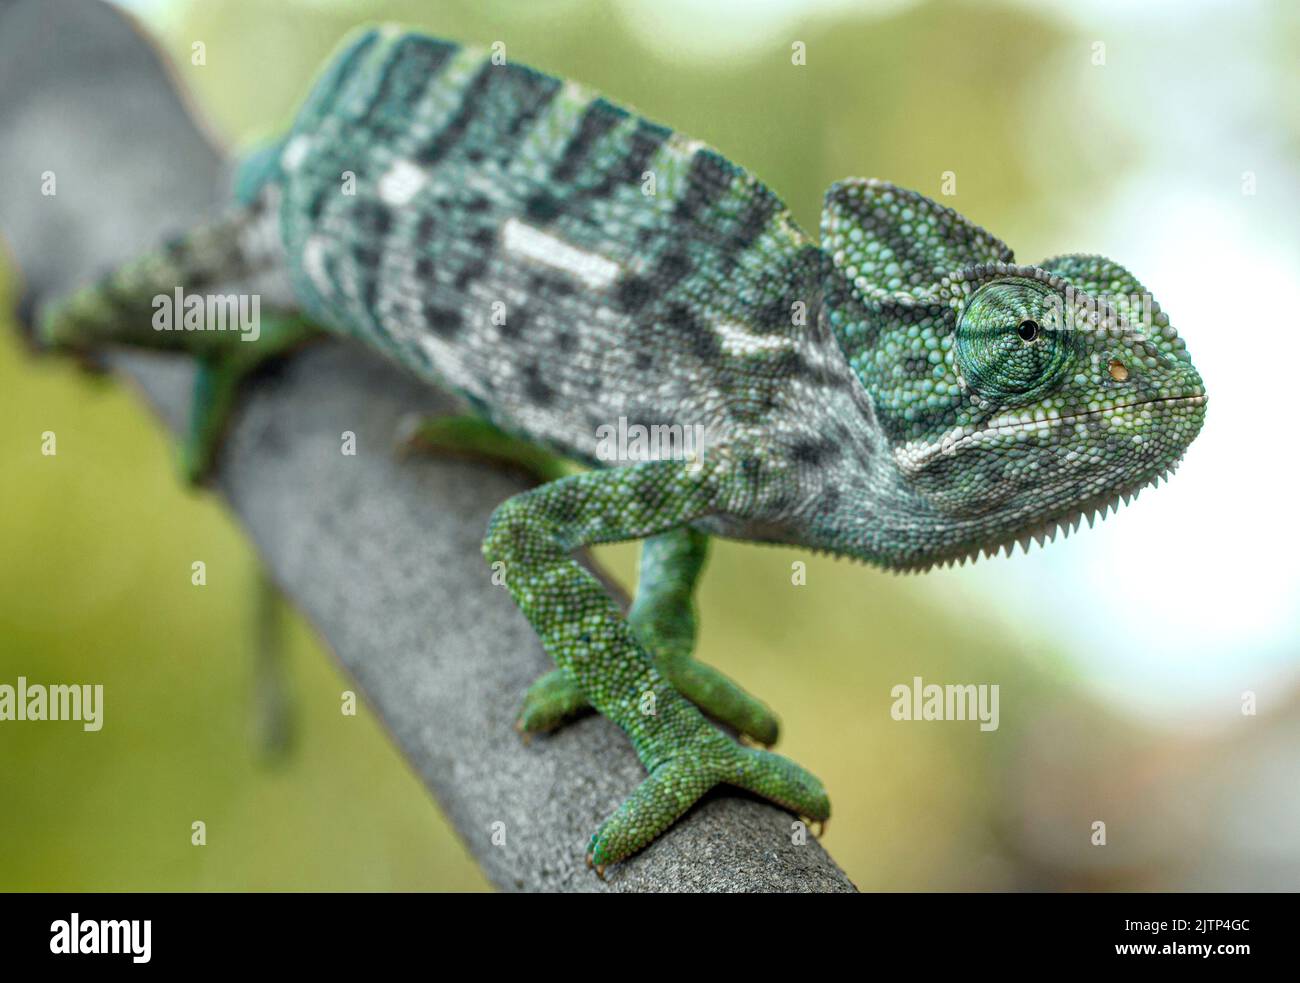 Chameleon on a branch; Green chameleon; Chameleon extending arm; green lizard; green reptile; Chamaeleo zeylanicus from the dry zone of Sri Lanka Stock Photo